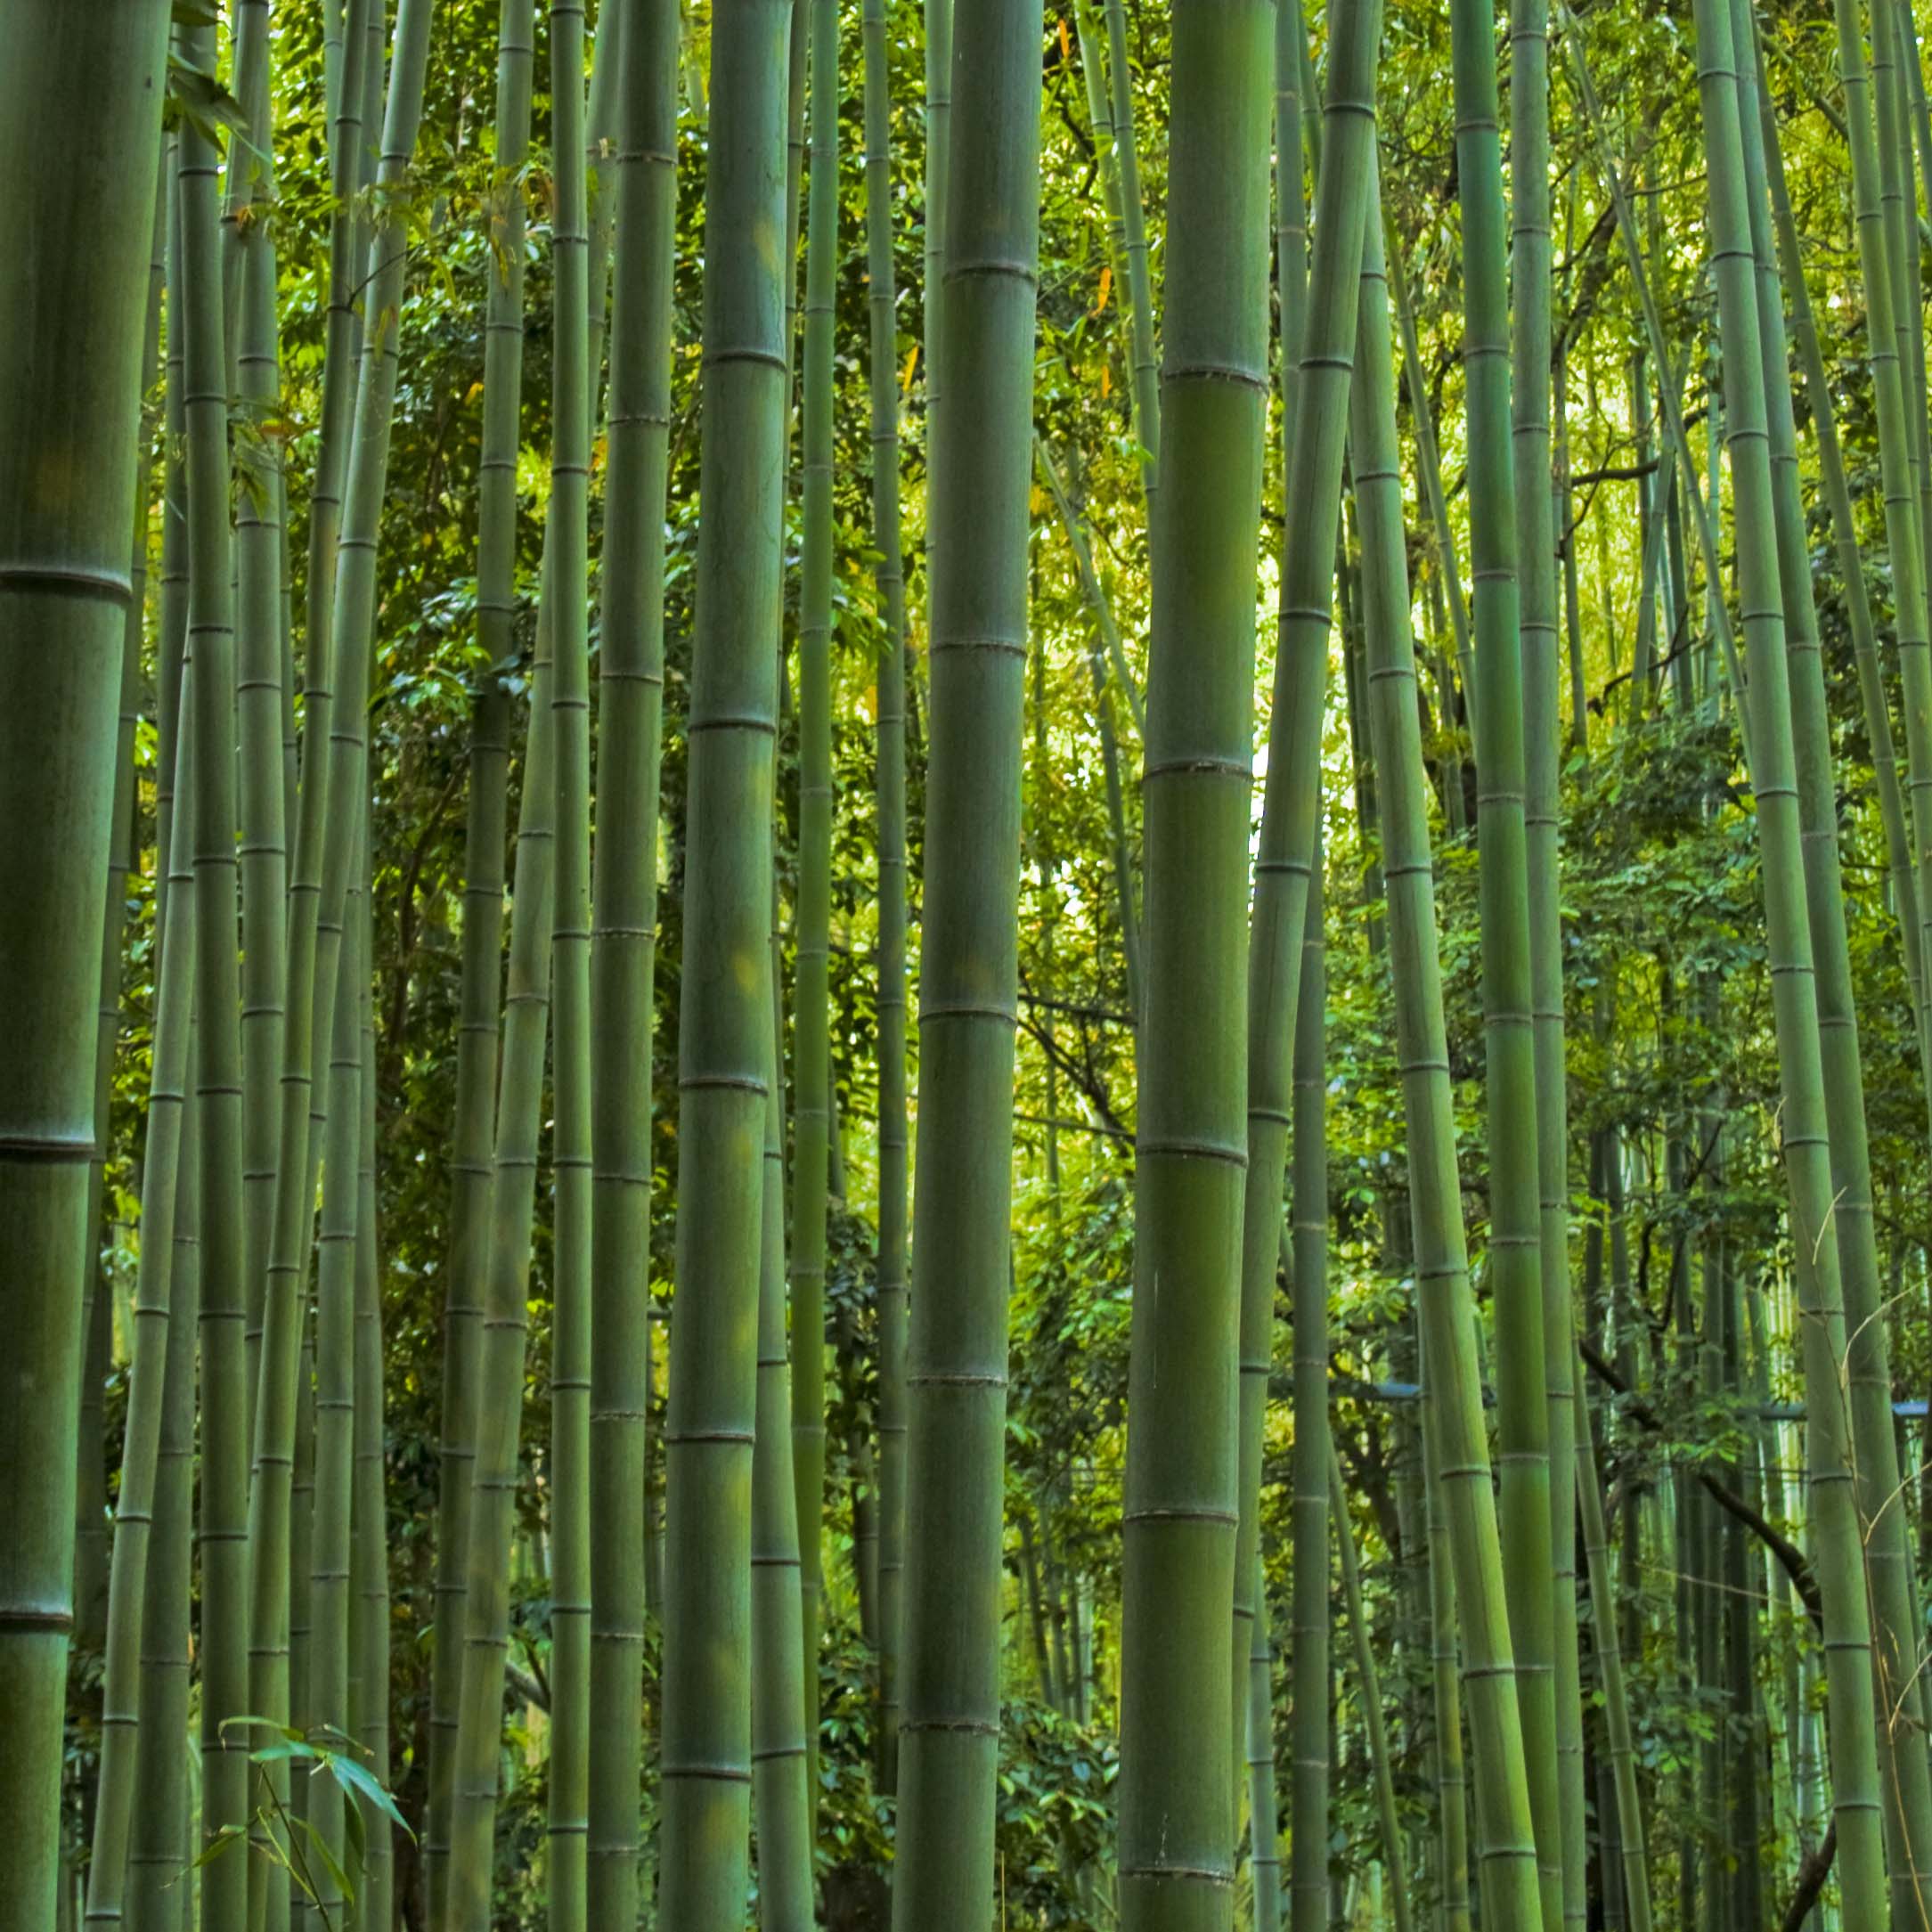  Bambou phyllostachys  de 25 vari t s vendues en ligne